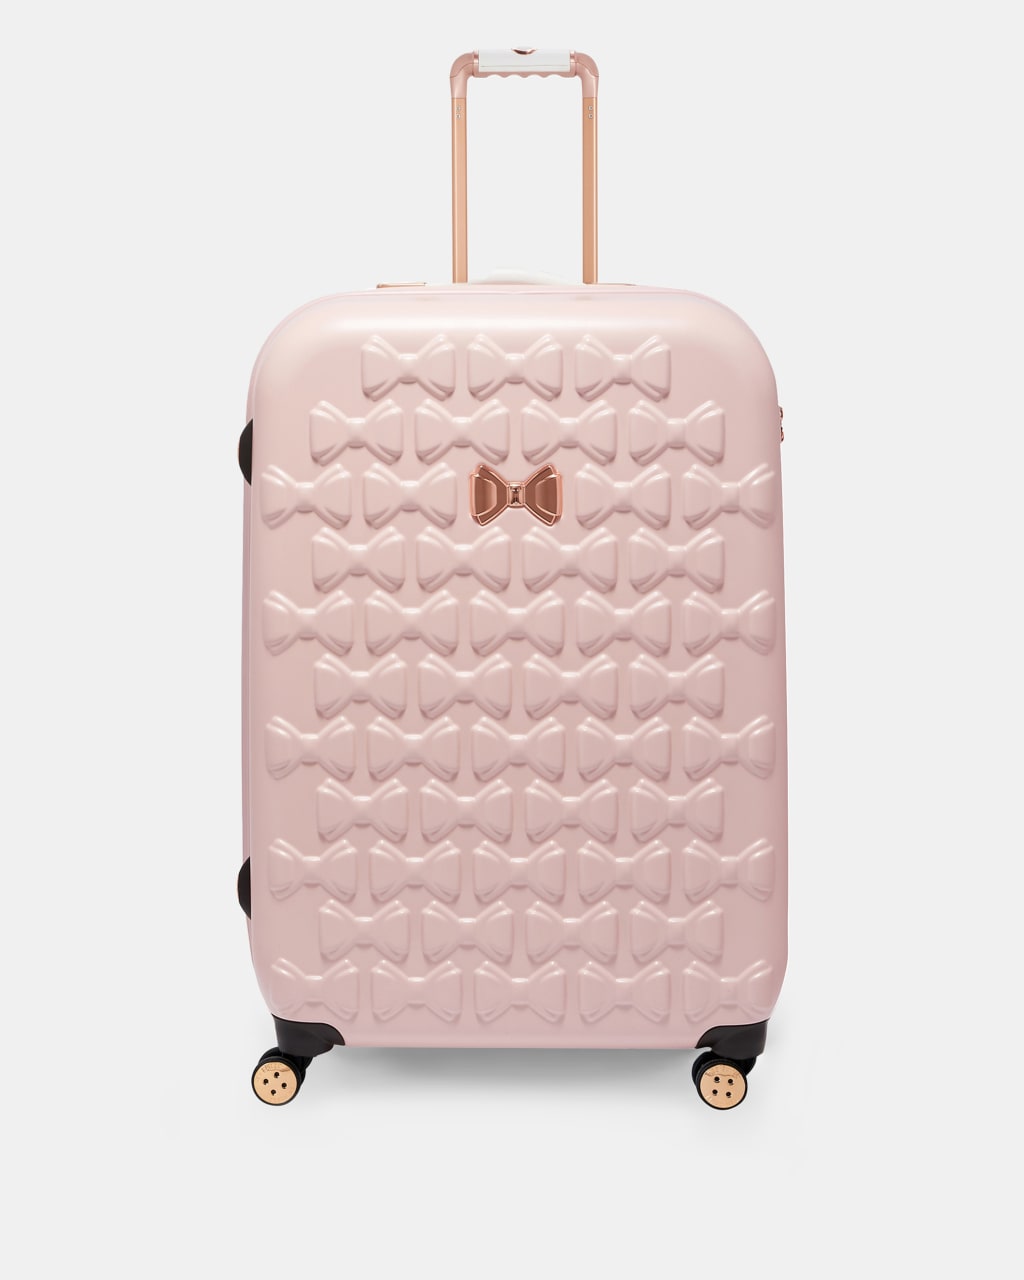 luggage large suitcase